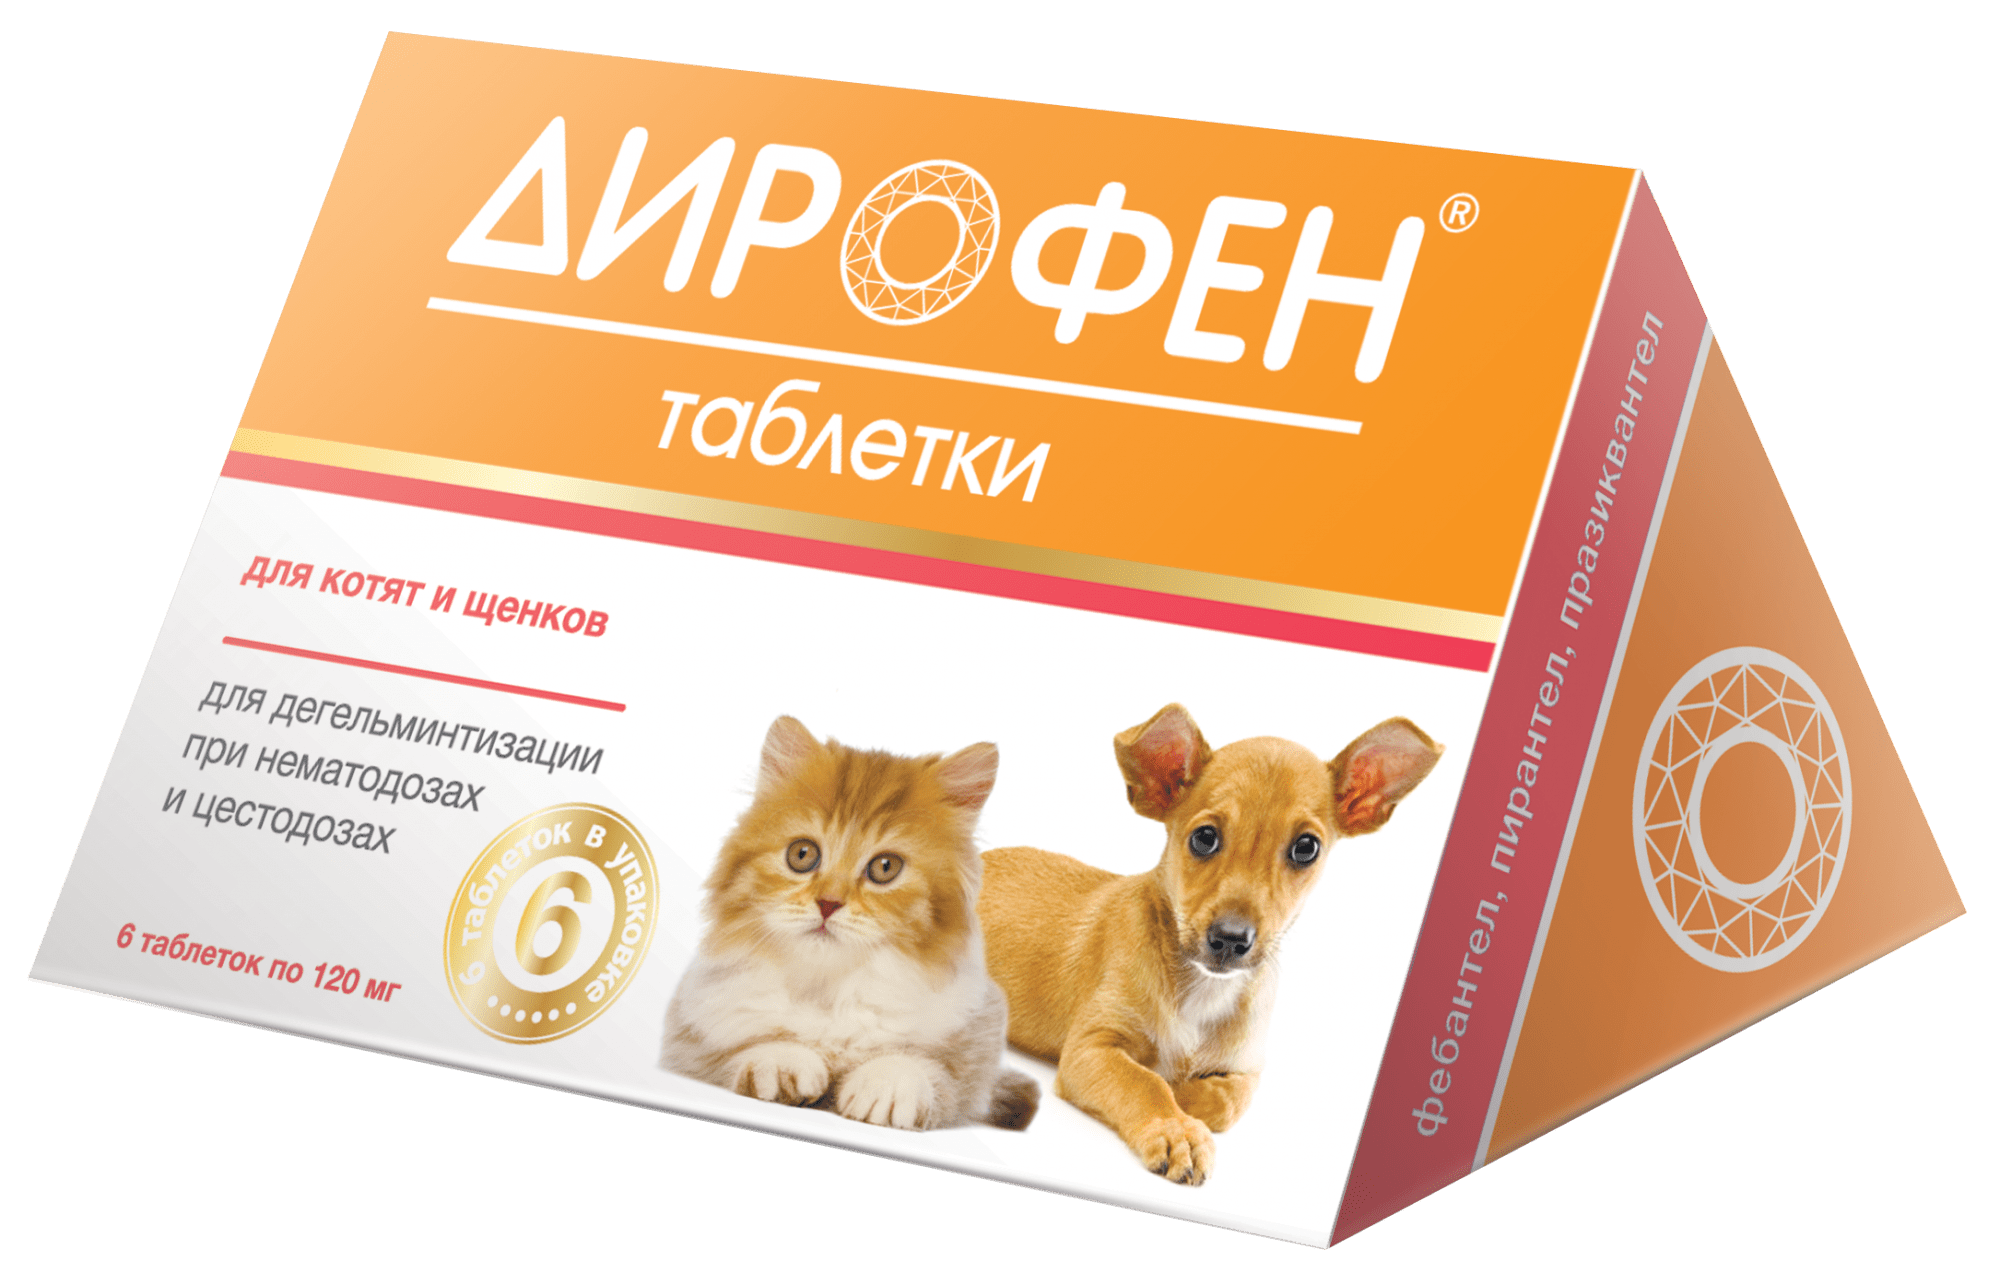 Дирофен Плюс табл антигельминтик для кошек и собак, для котят и щенков 1